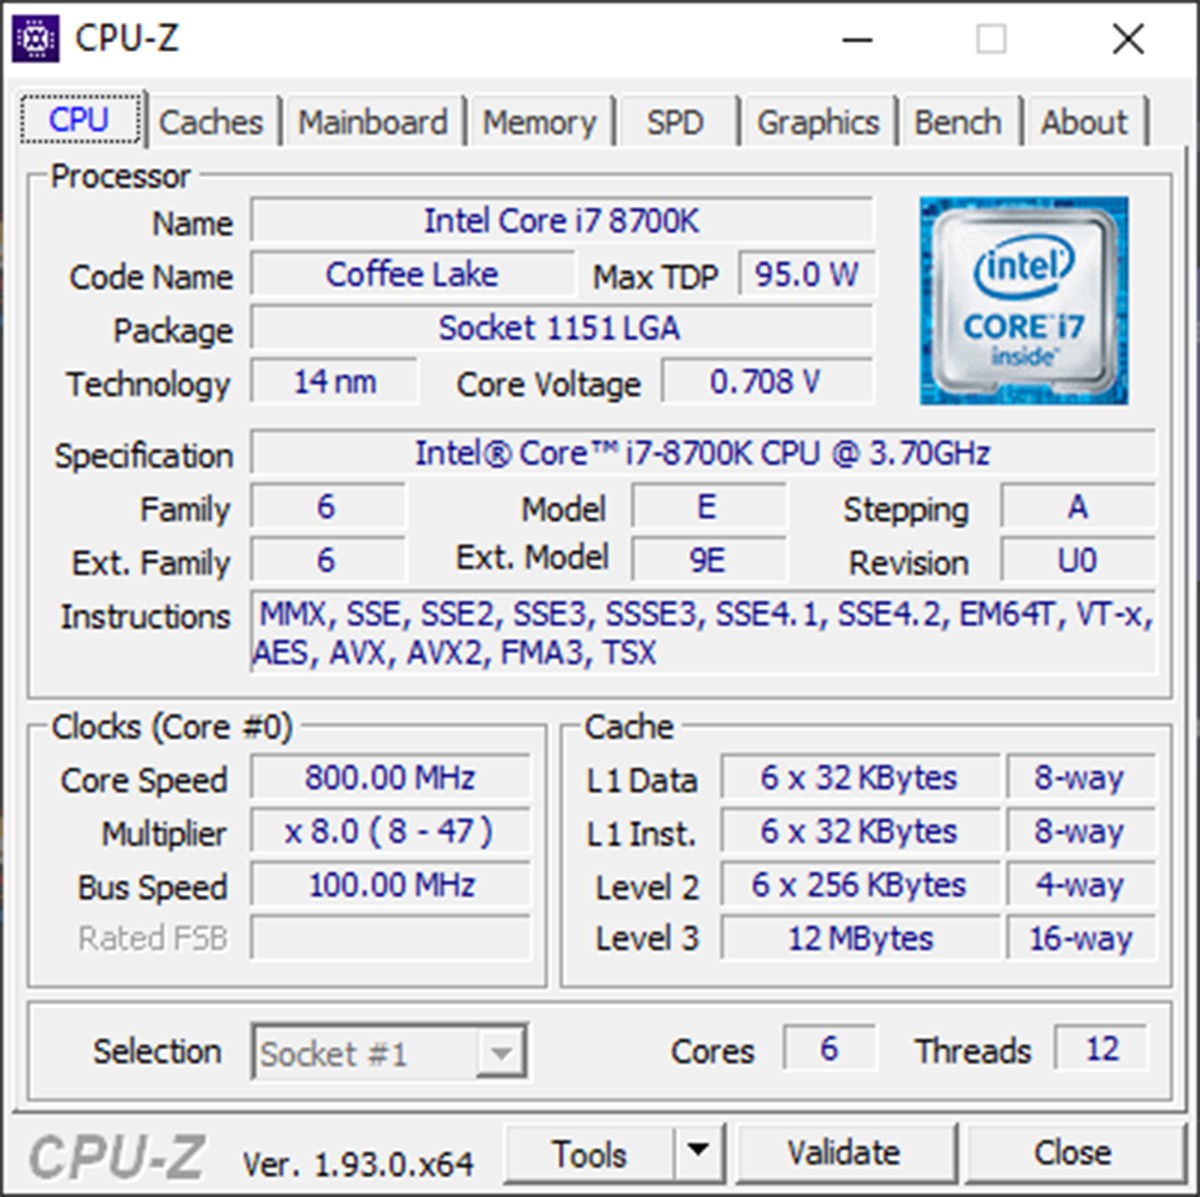 Le logiciel CPU-Z est disponible en version 1.93